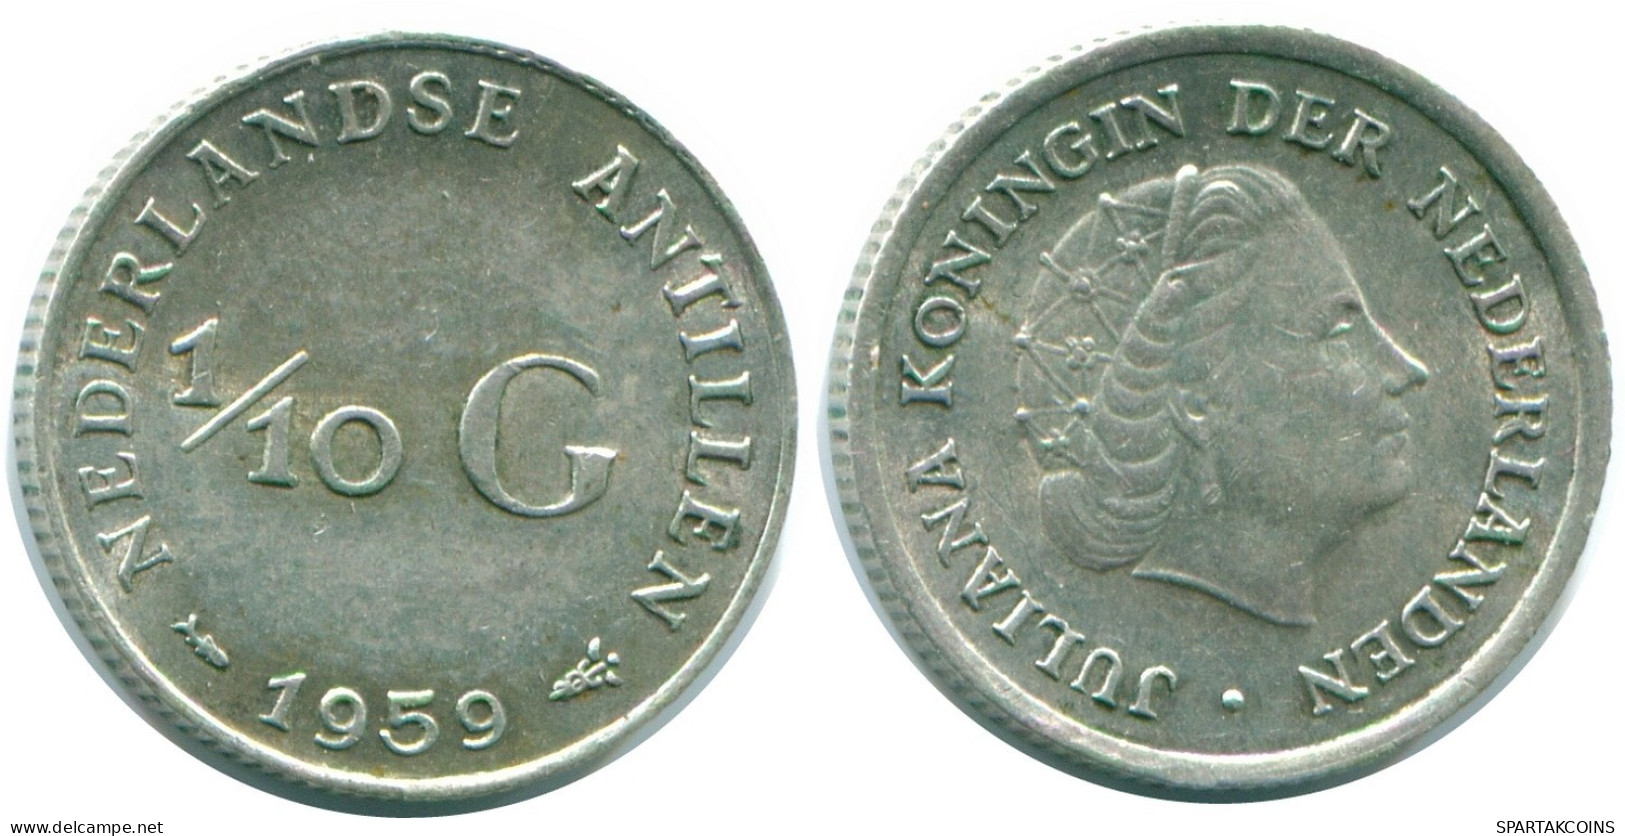 1/10 GULDEN 1959 NIEDERLÄNDISCHE ANTILLEN SILBER Koloniale Münze #NL12198.3.D.A - Antillas Neerlandesas